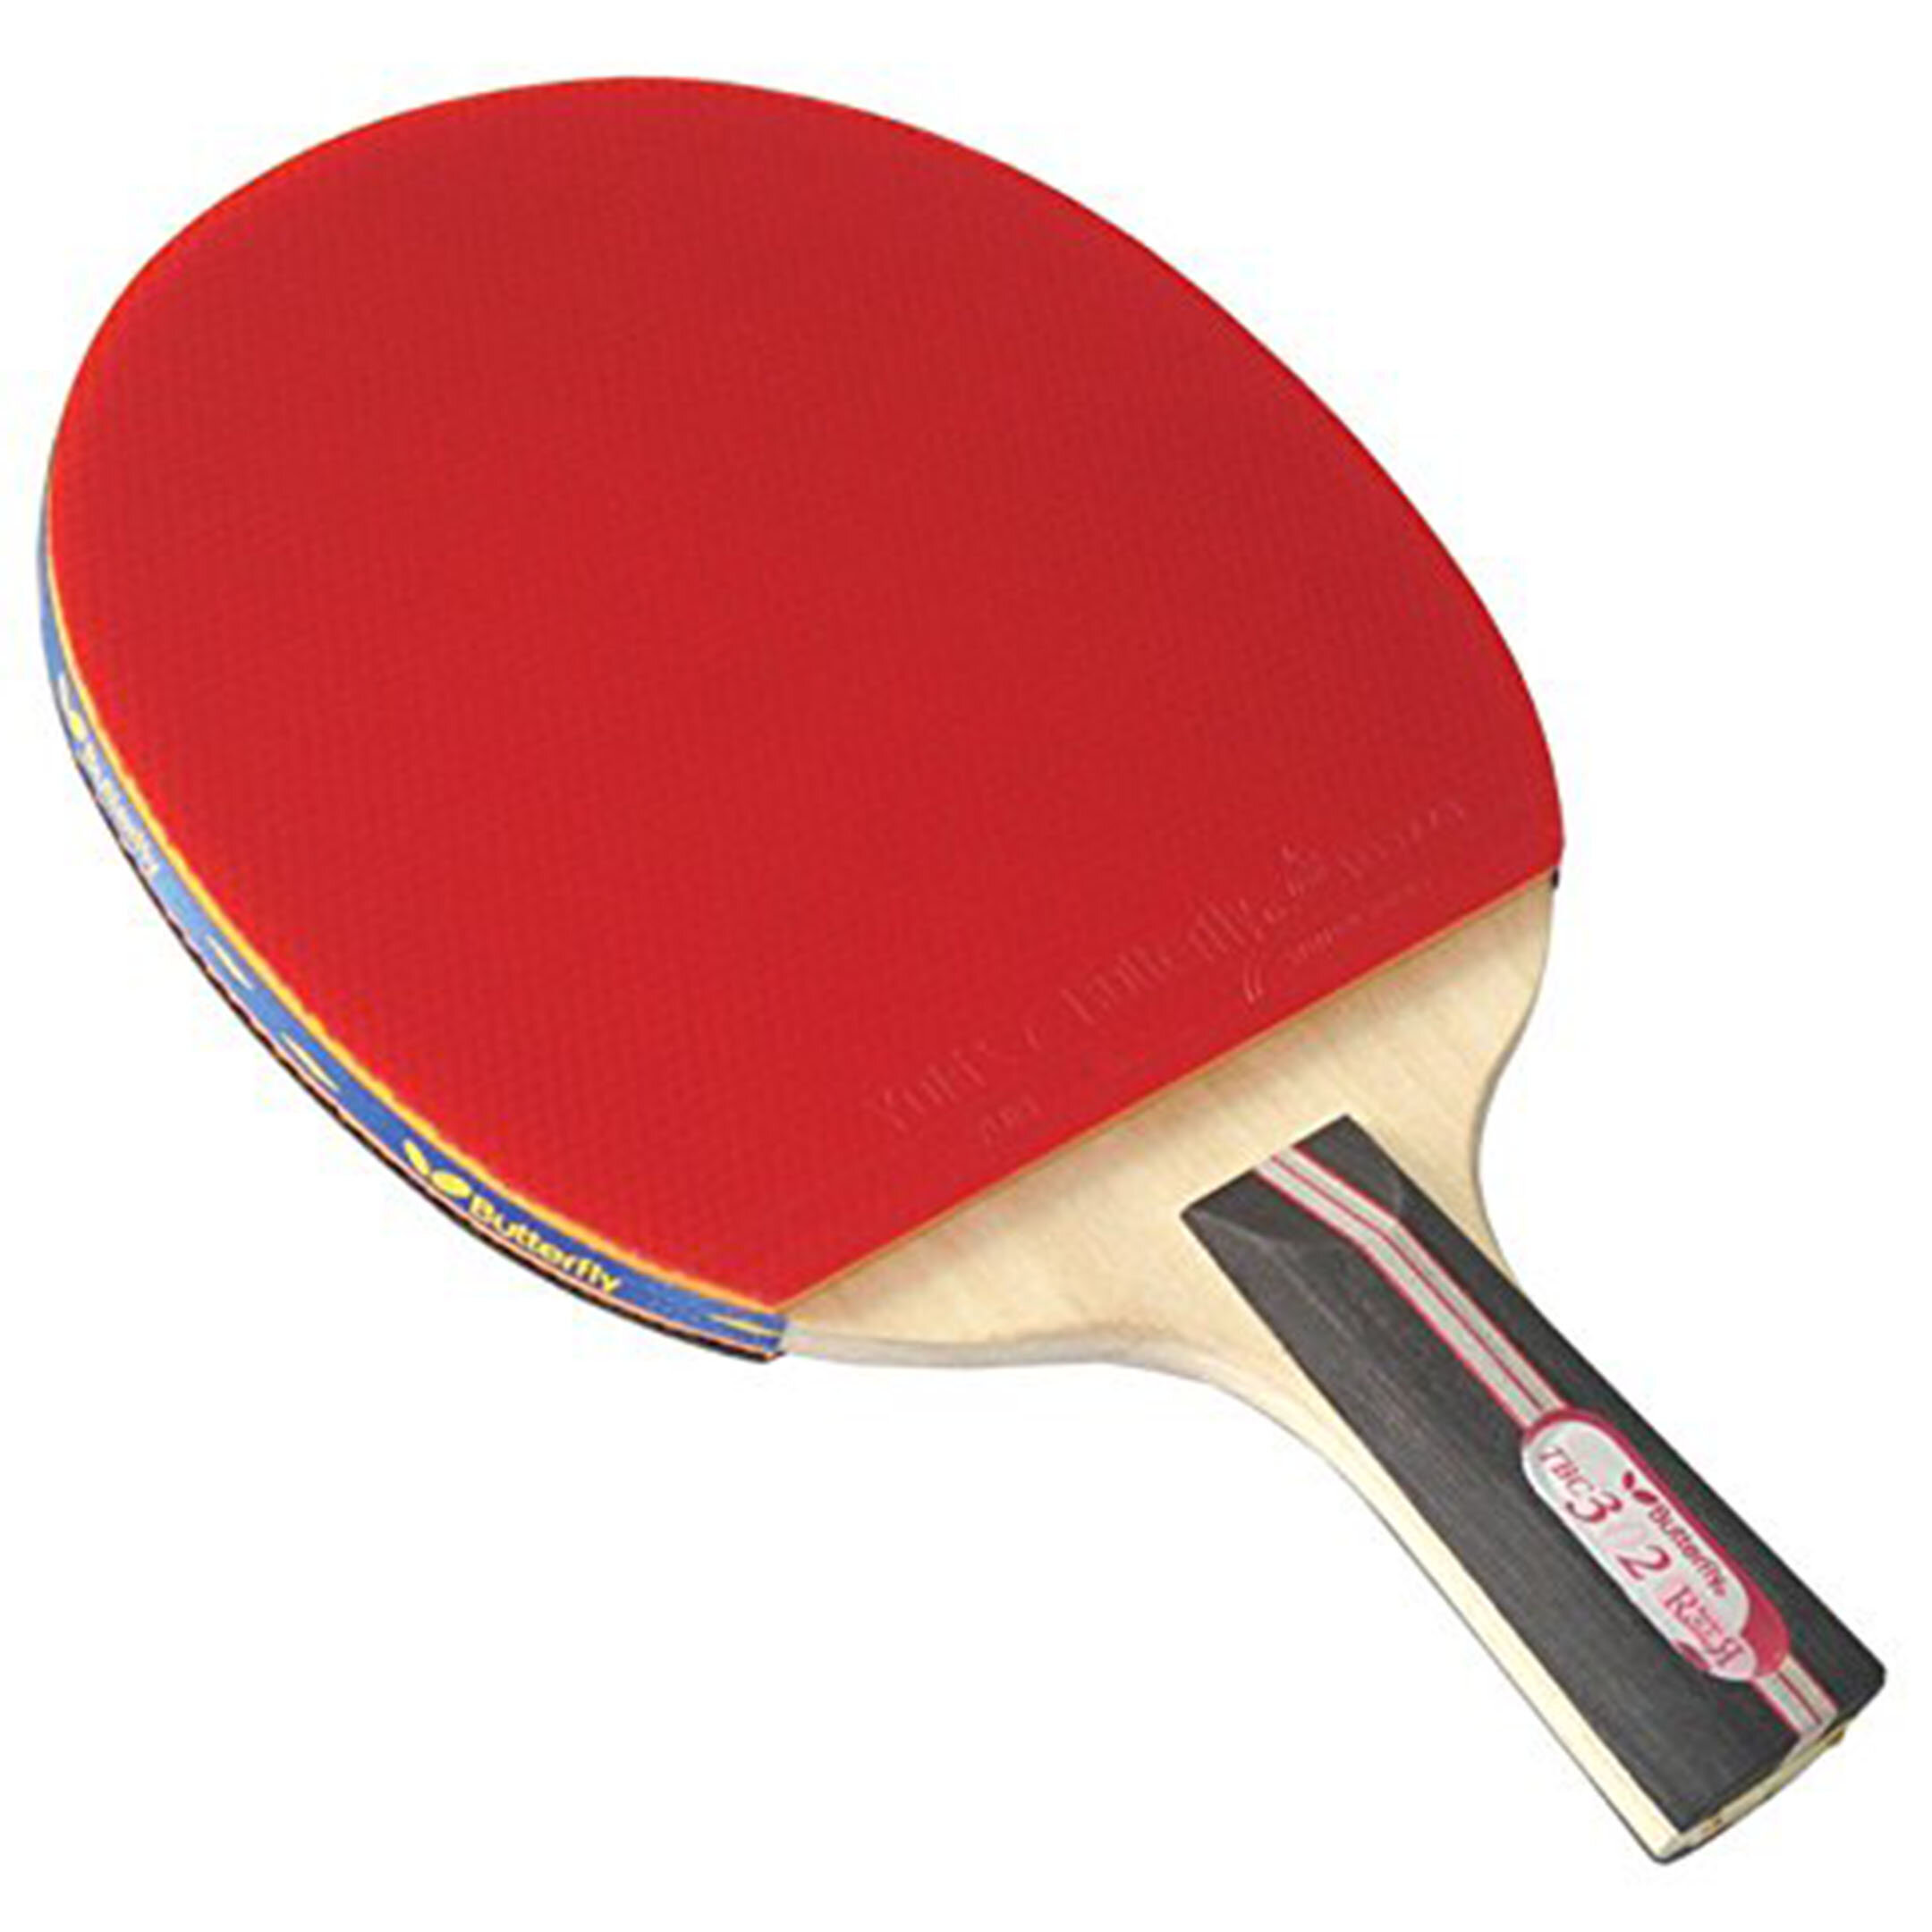 Накладки для настольного тенниса какие. Penhold Table Tennis. Пинг-понг. Butterfly настольный теннис. Ракетка для пинг понга с наждачкой.